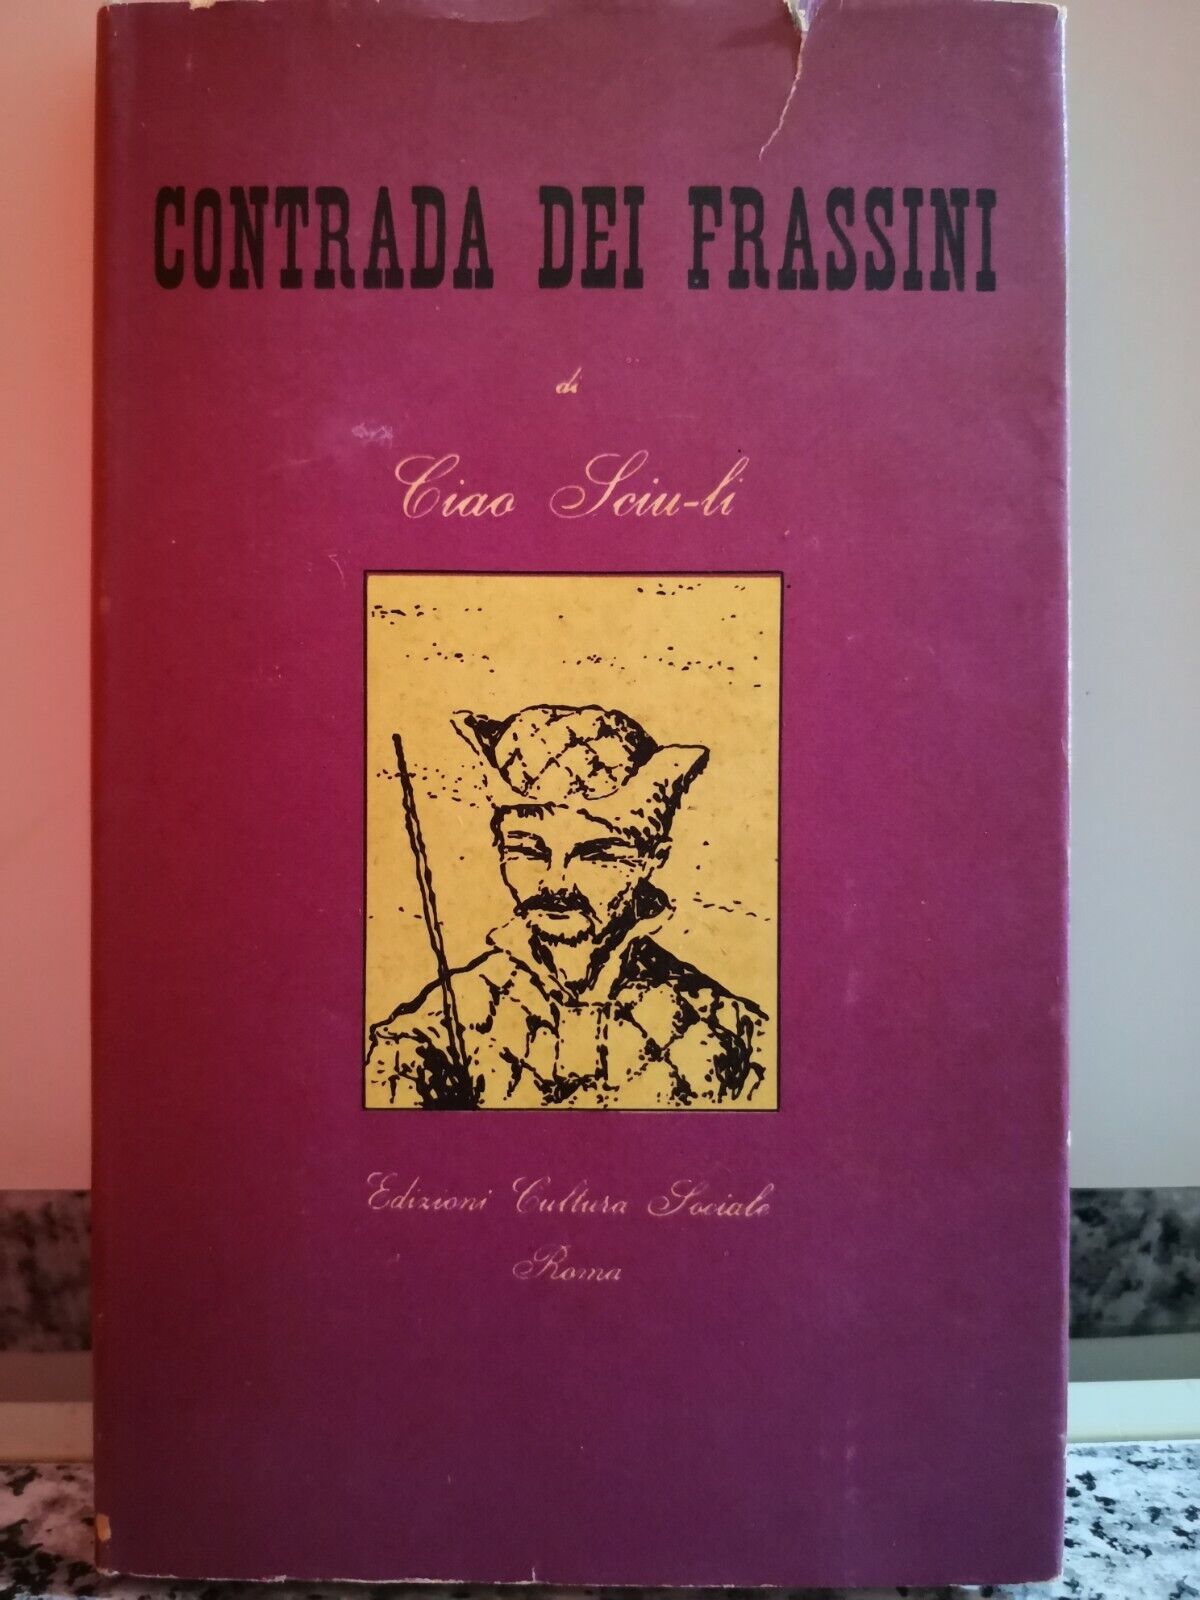  Contrada dei Frassini  di Ciao Sciu -li,  1954,  Cultura Sociale-F